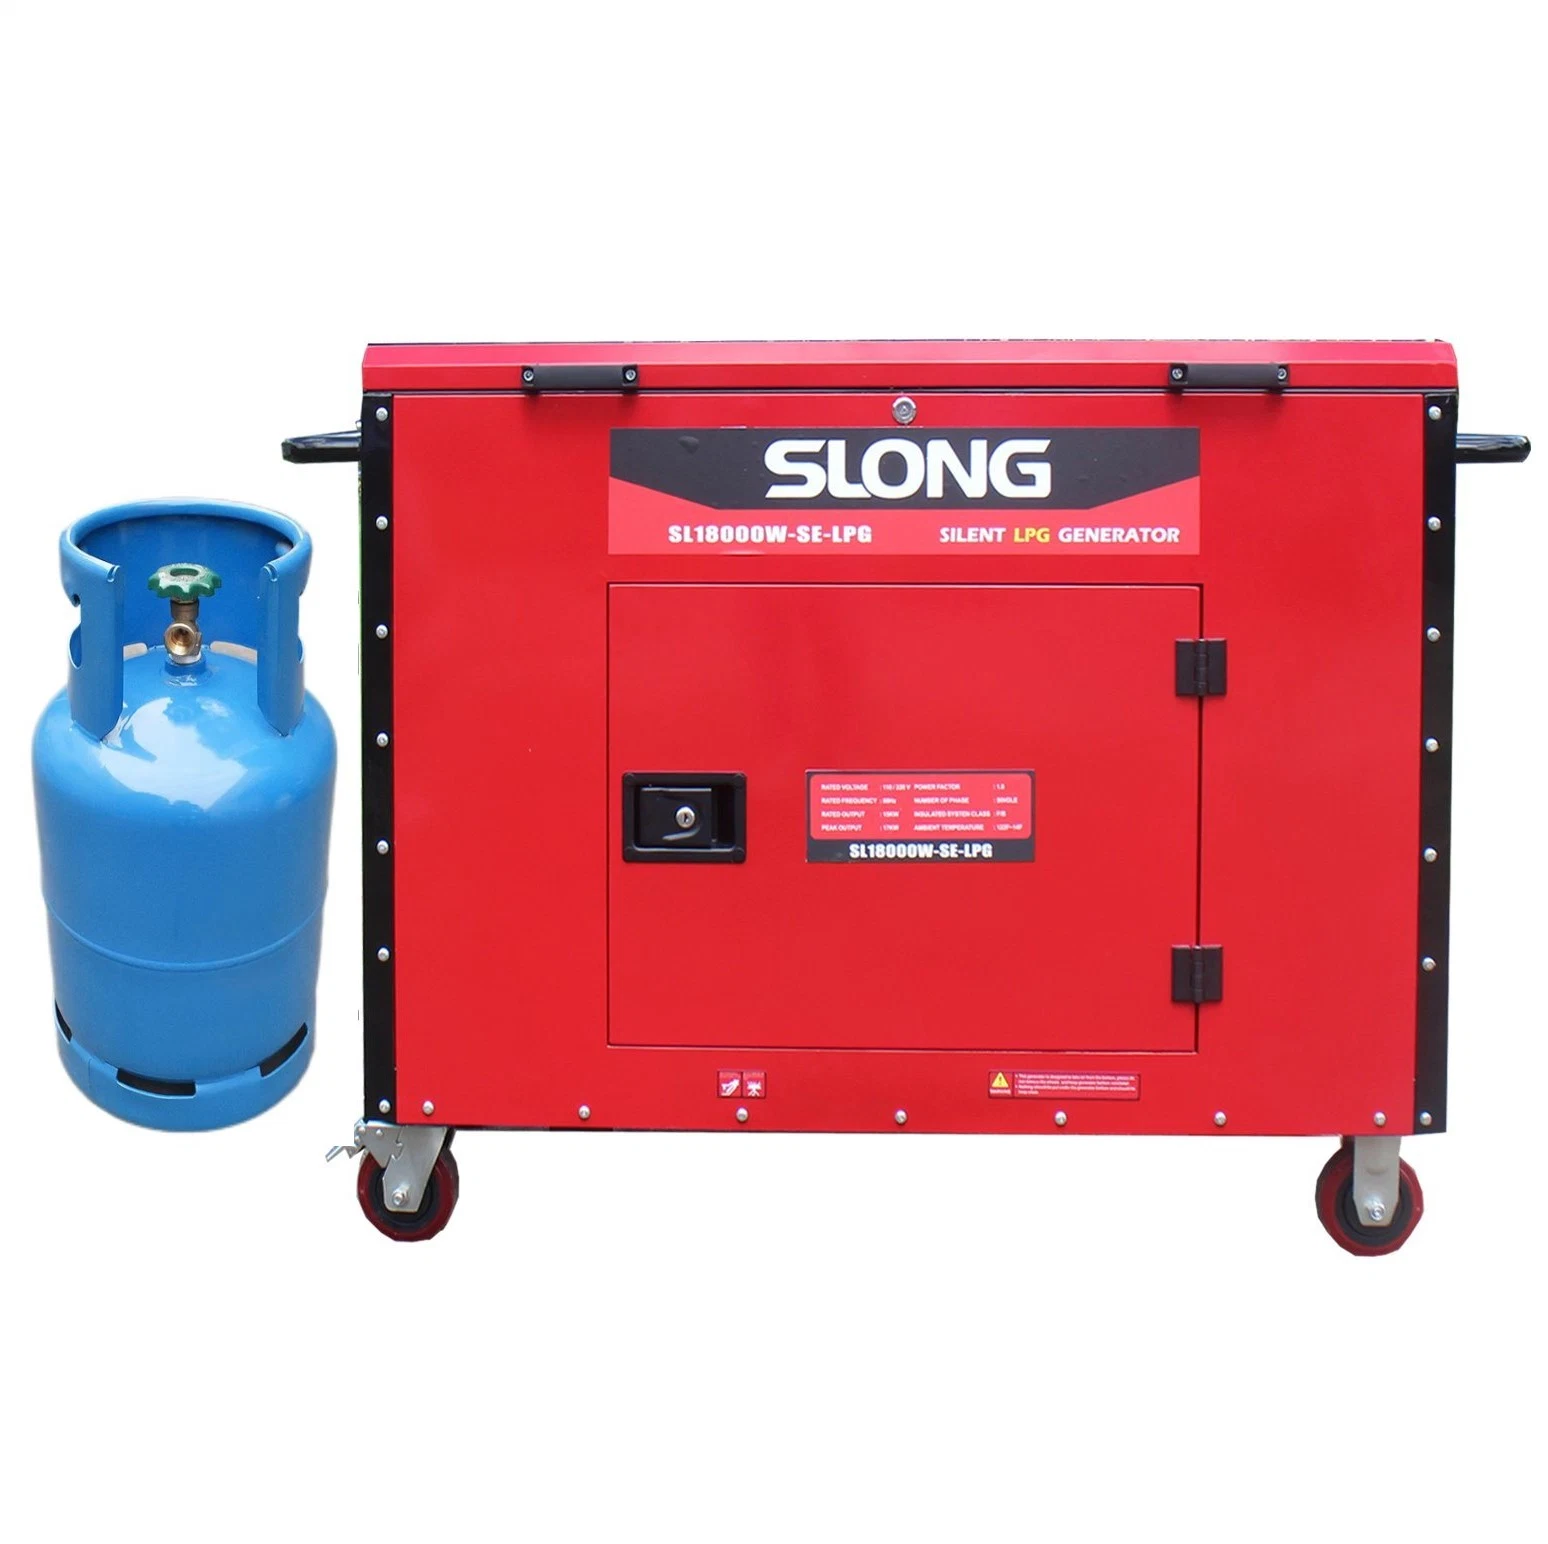 Slong 15kw 17kw Pure Silent LPG Generator Set Erdgas Generator